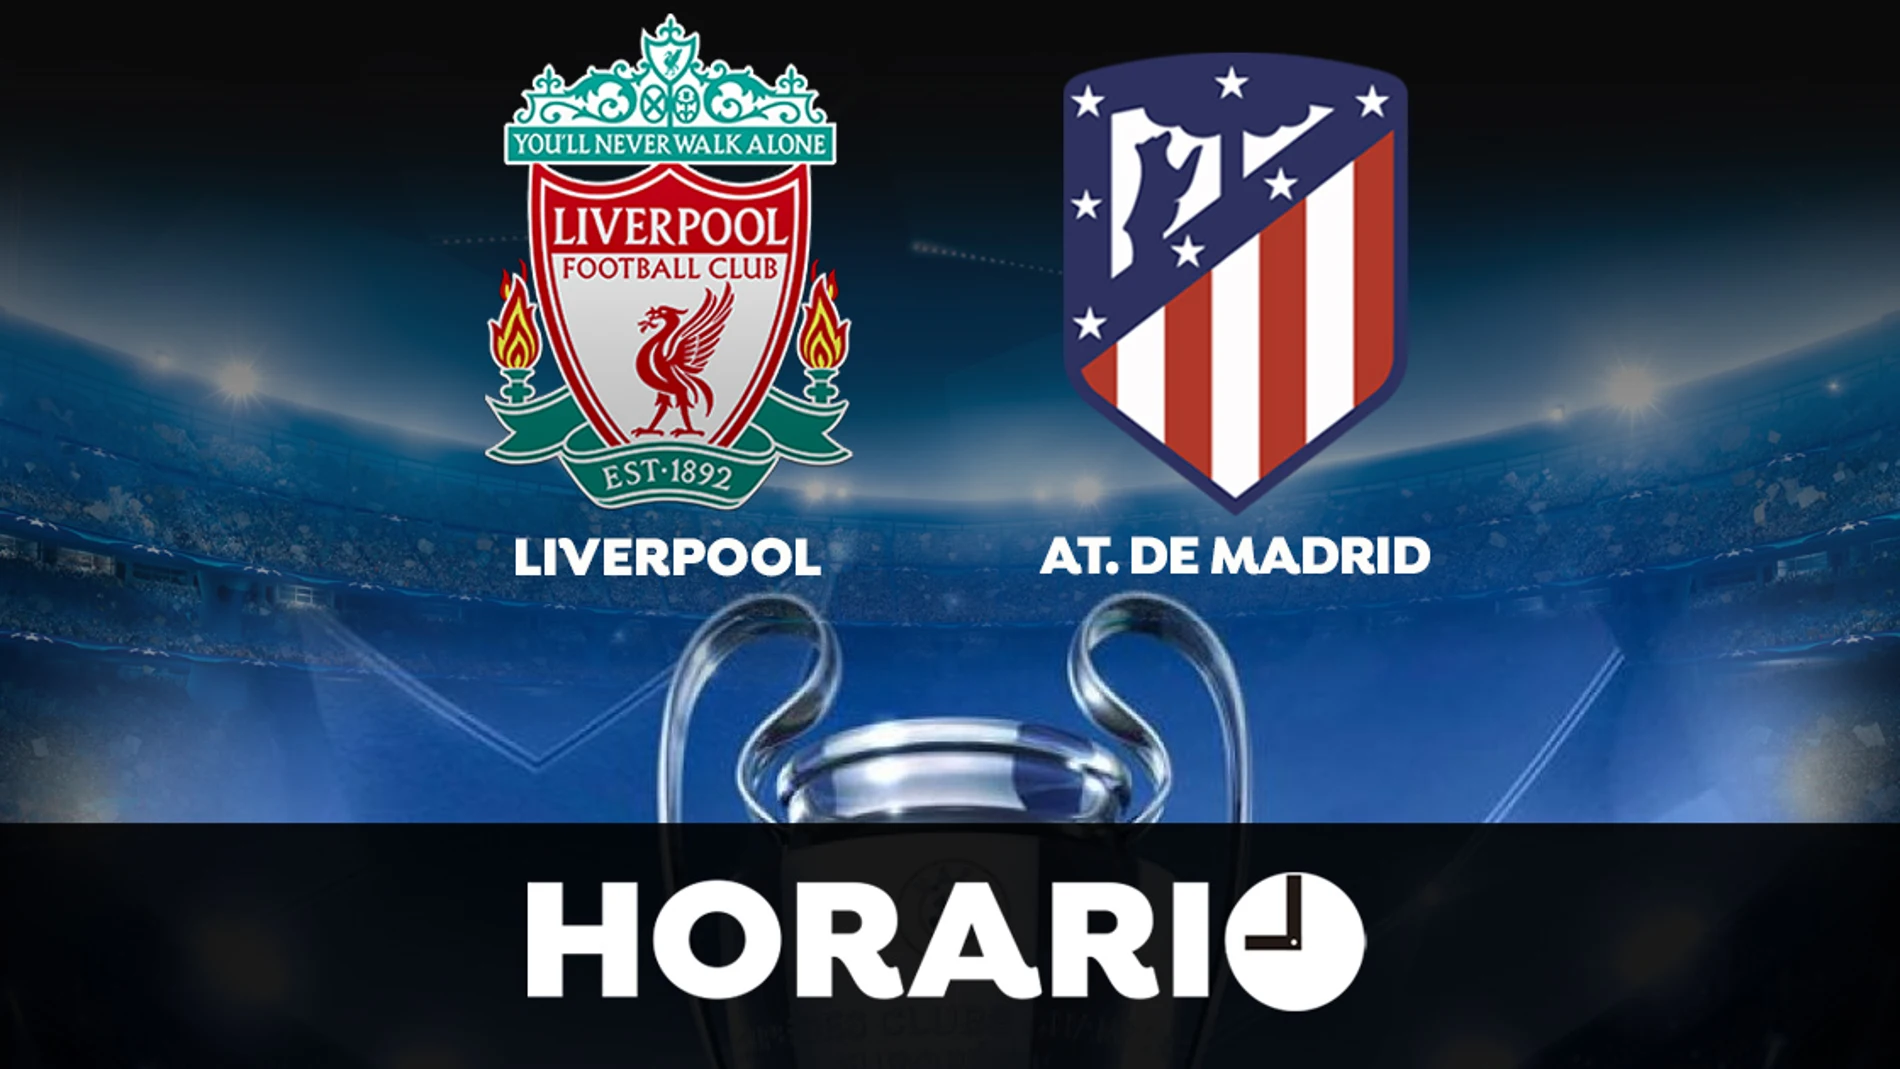 Liverpool - Atlético de Madrid: Horario y donde ver el partido de la Champions League en directo